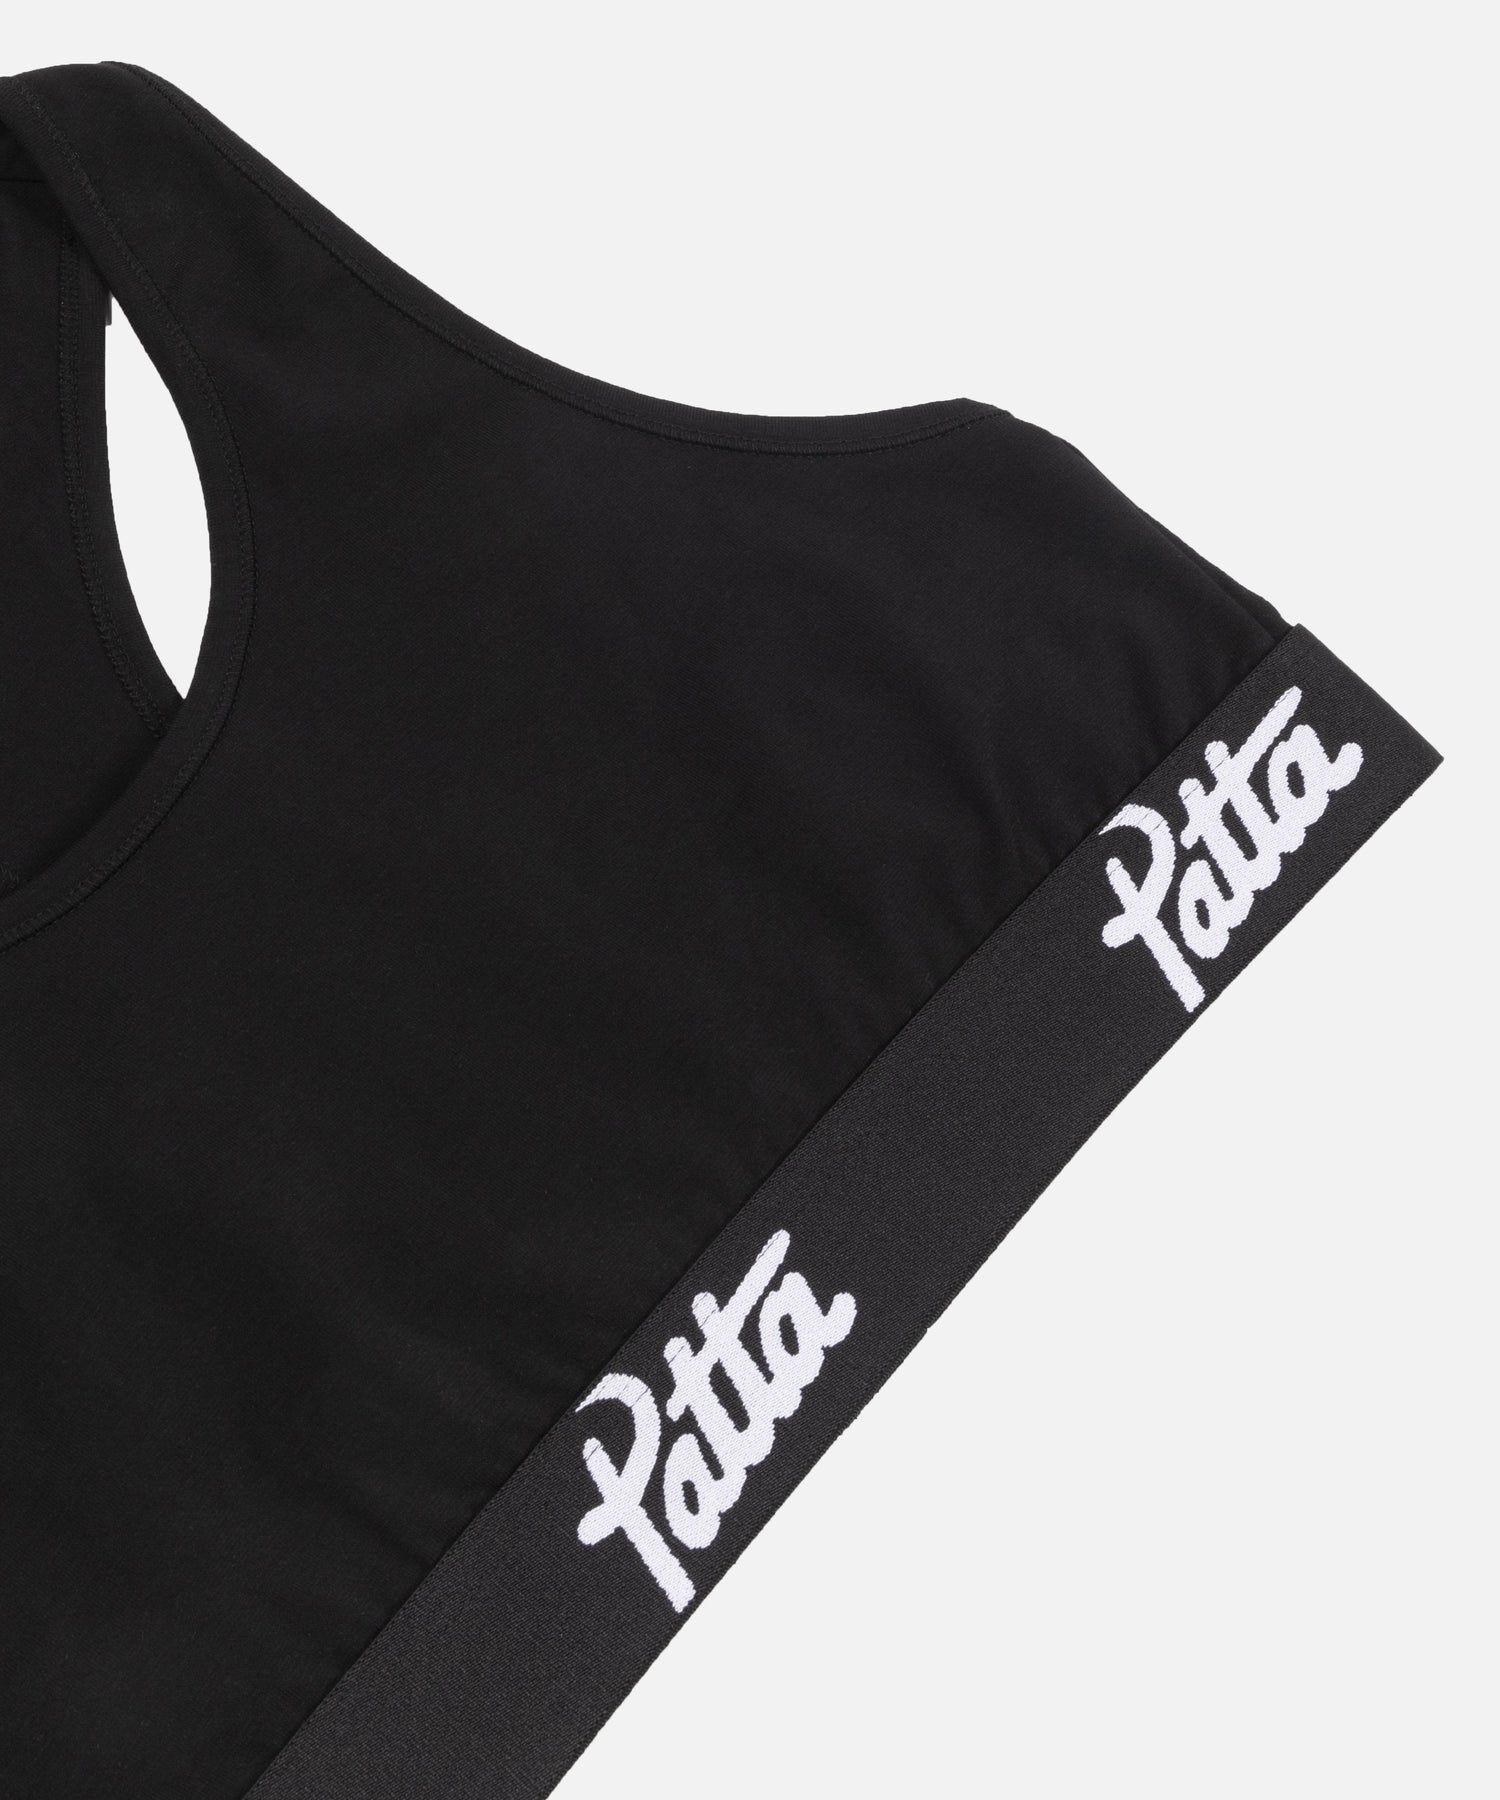 Patta Underwear Women Bralette (Black)